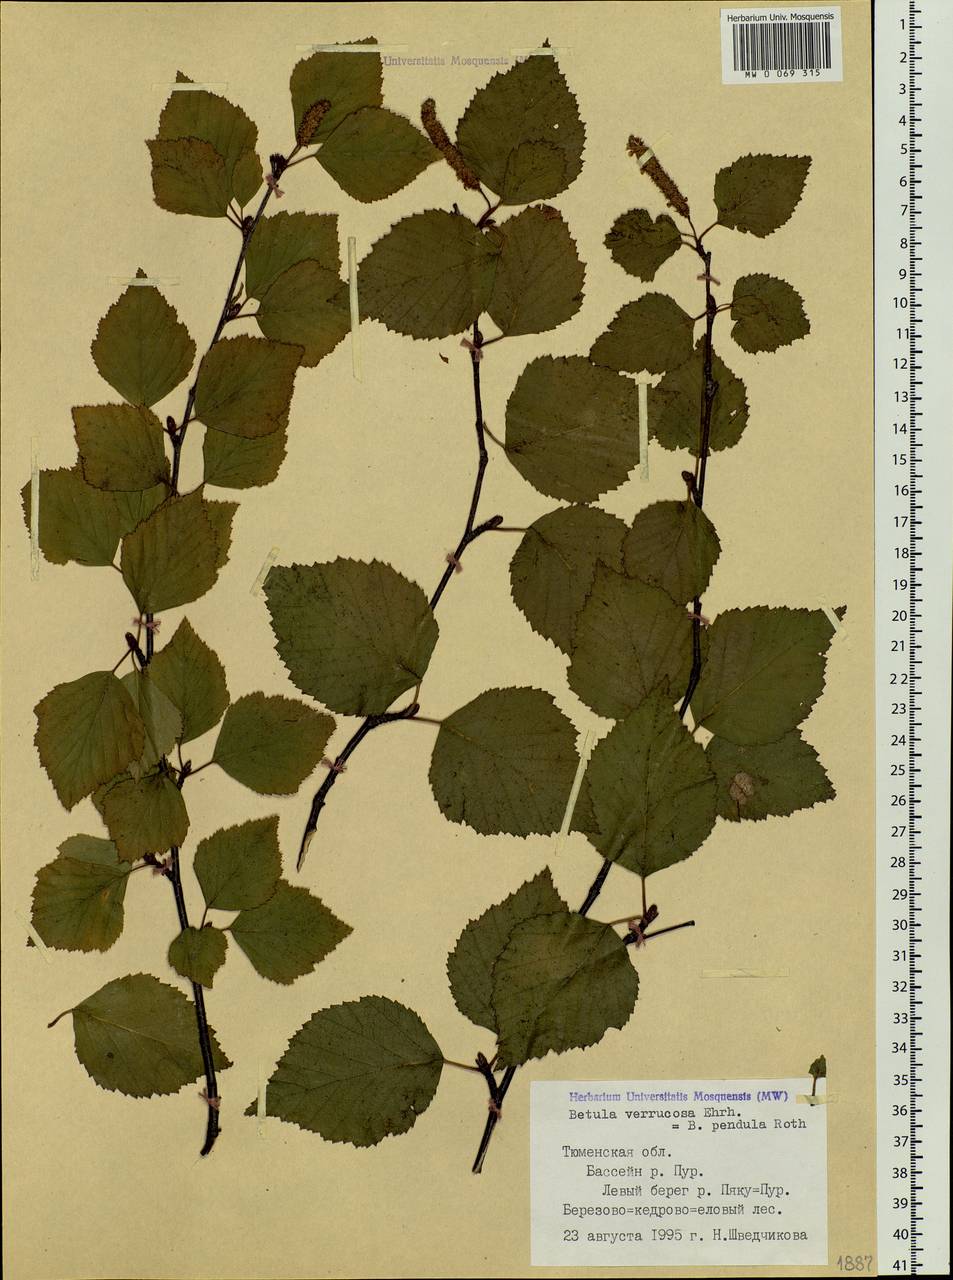 Betula pendula Roth, Siberia, Western Siberia (S1) (Russia)